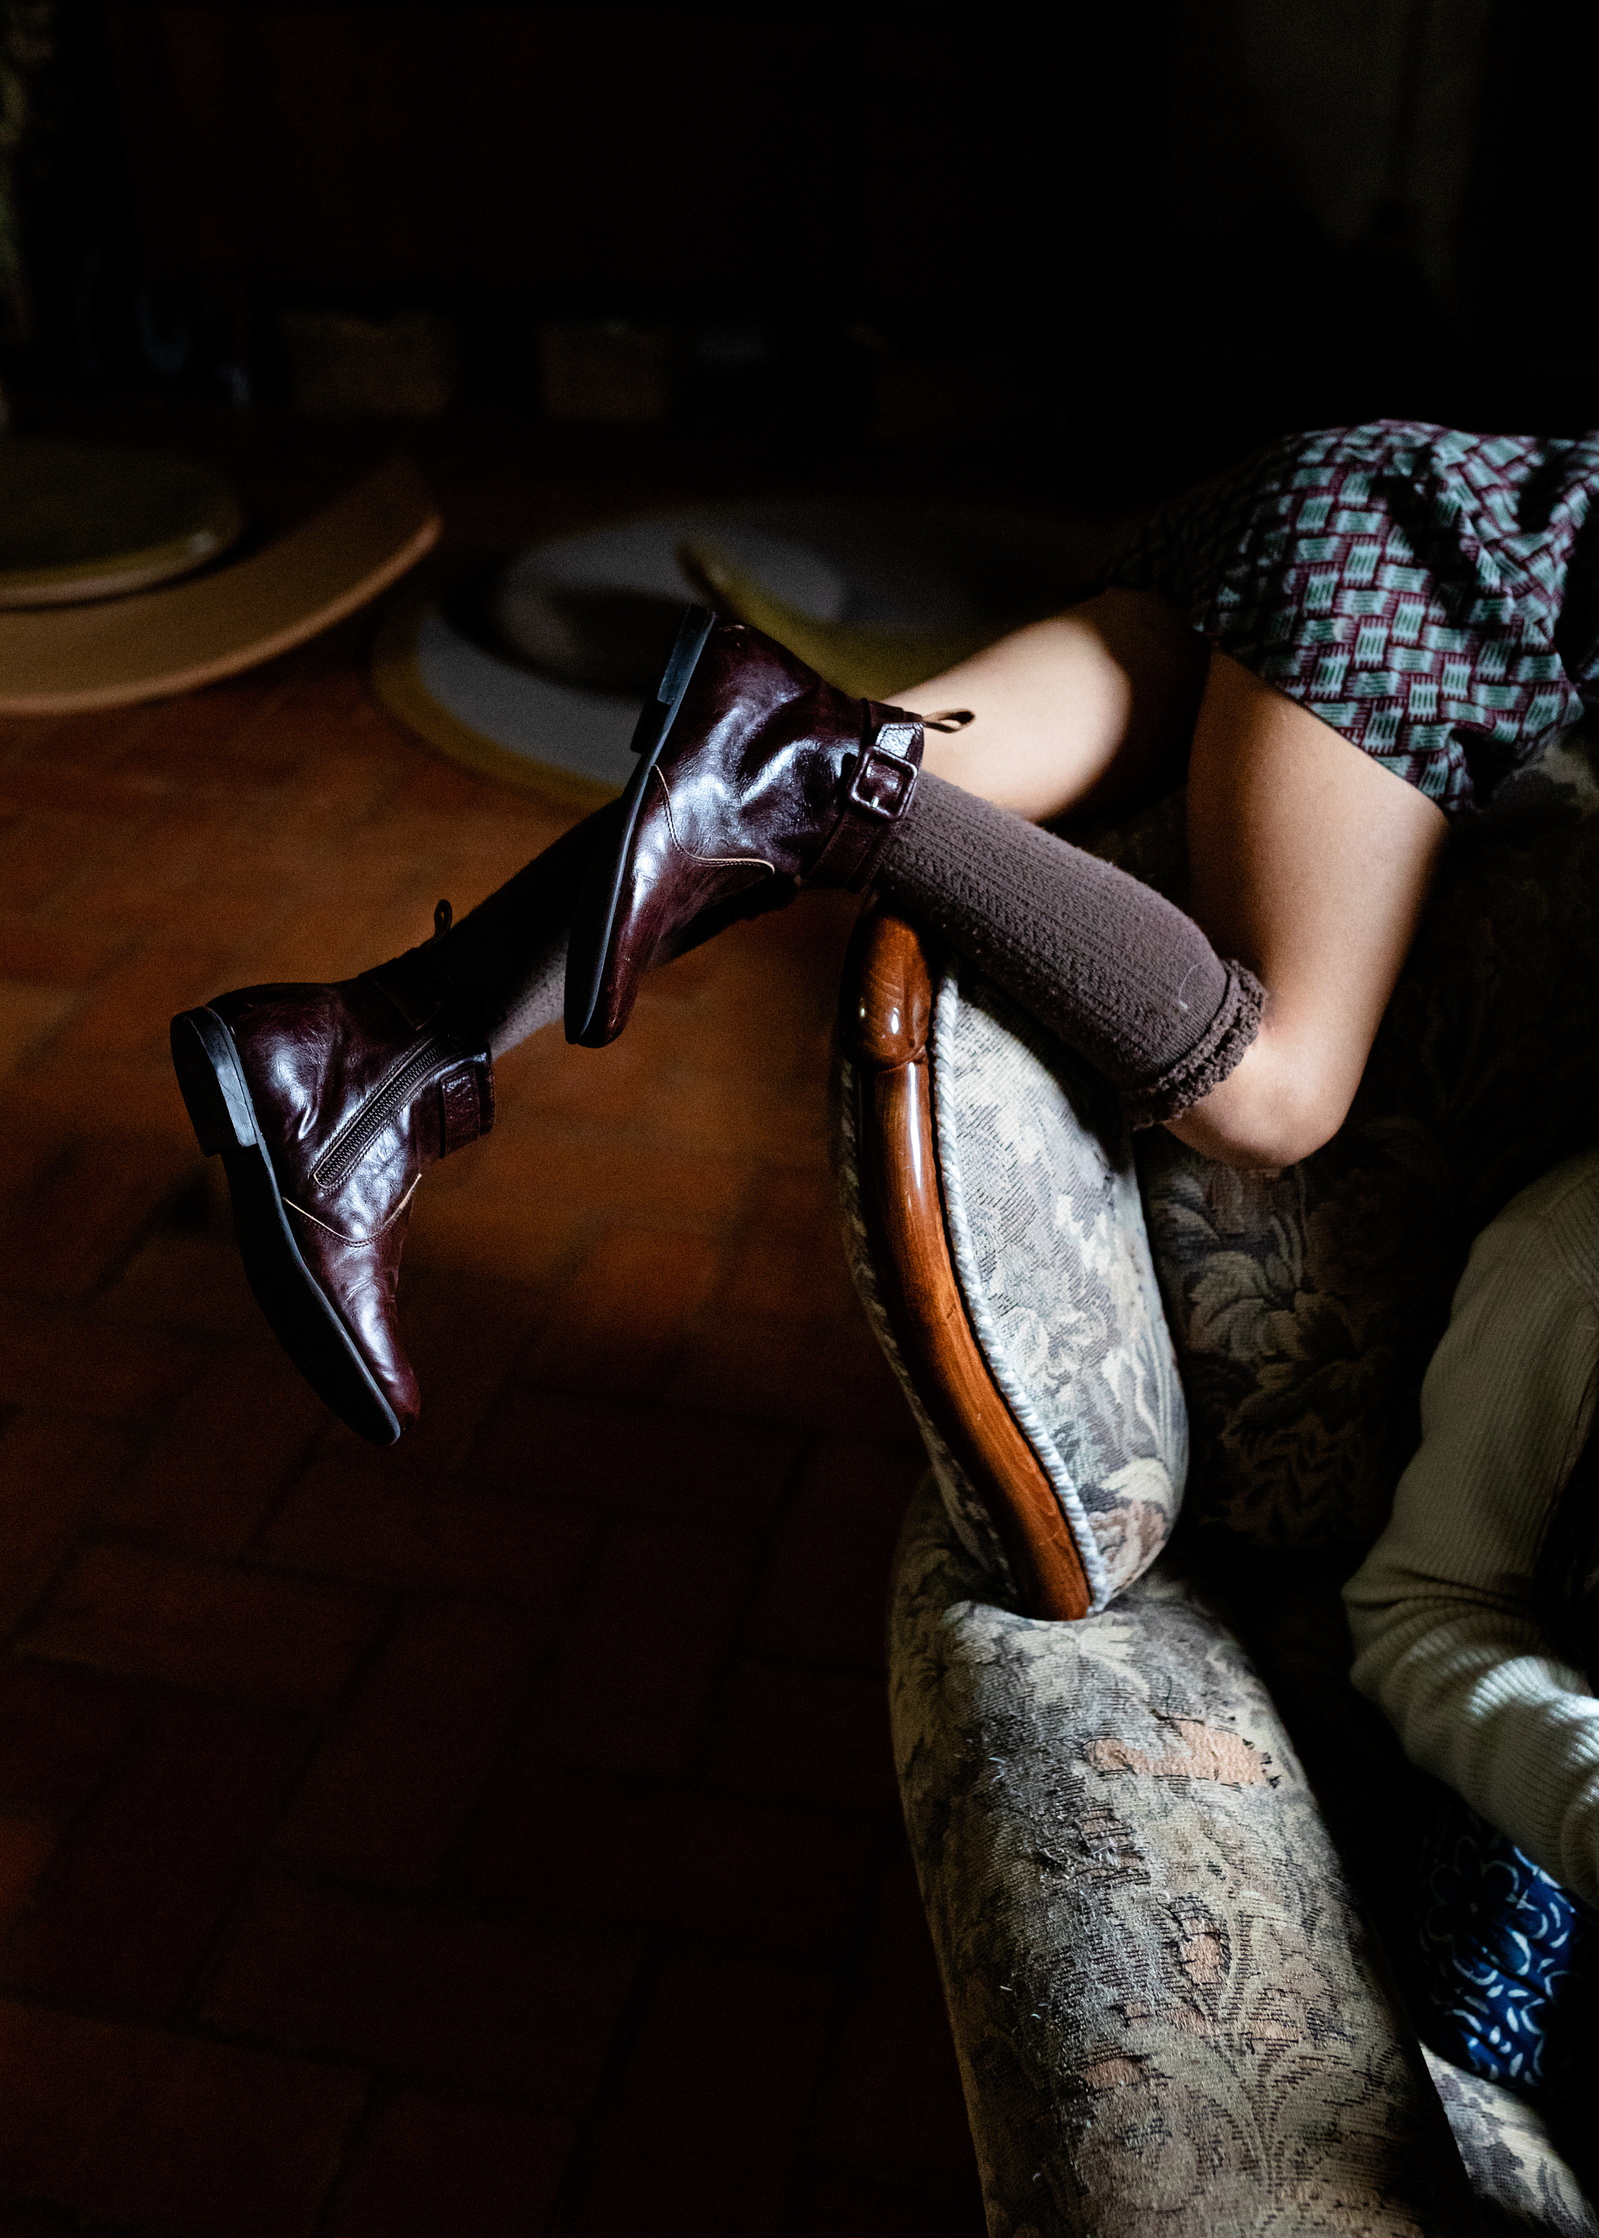 niños jugando en el salón. fotografia para marca de zapatos y alfombras. 
Manuela Franjou fashion and branding photography